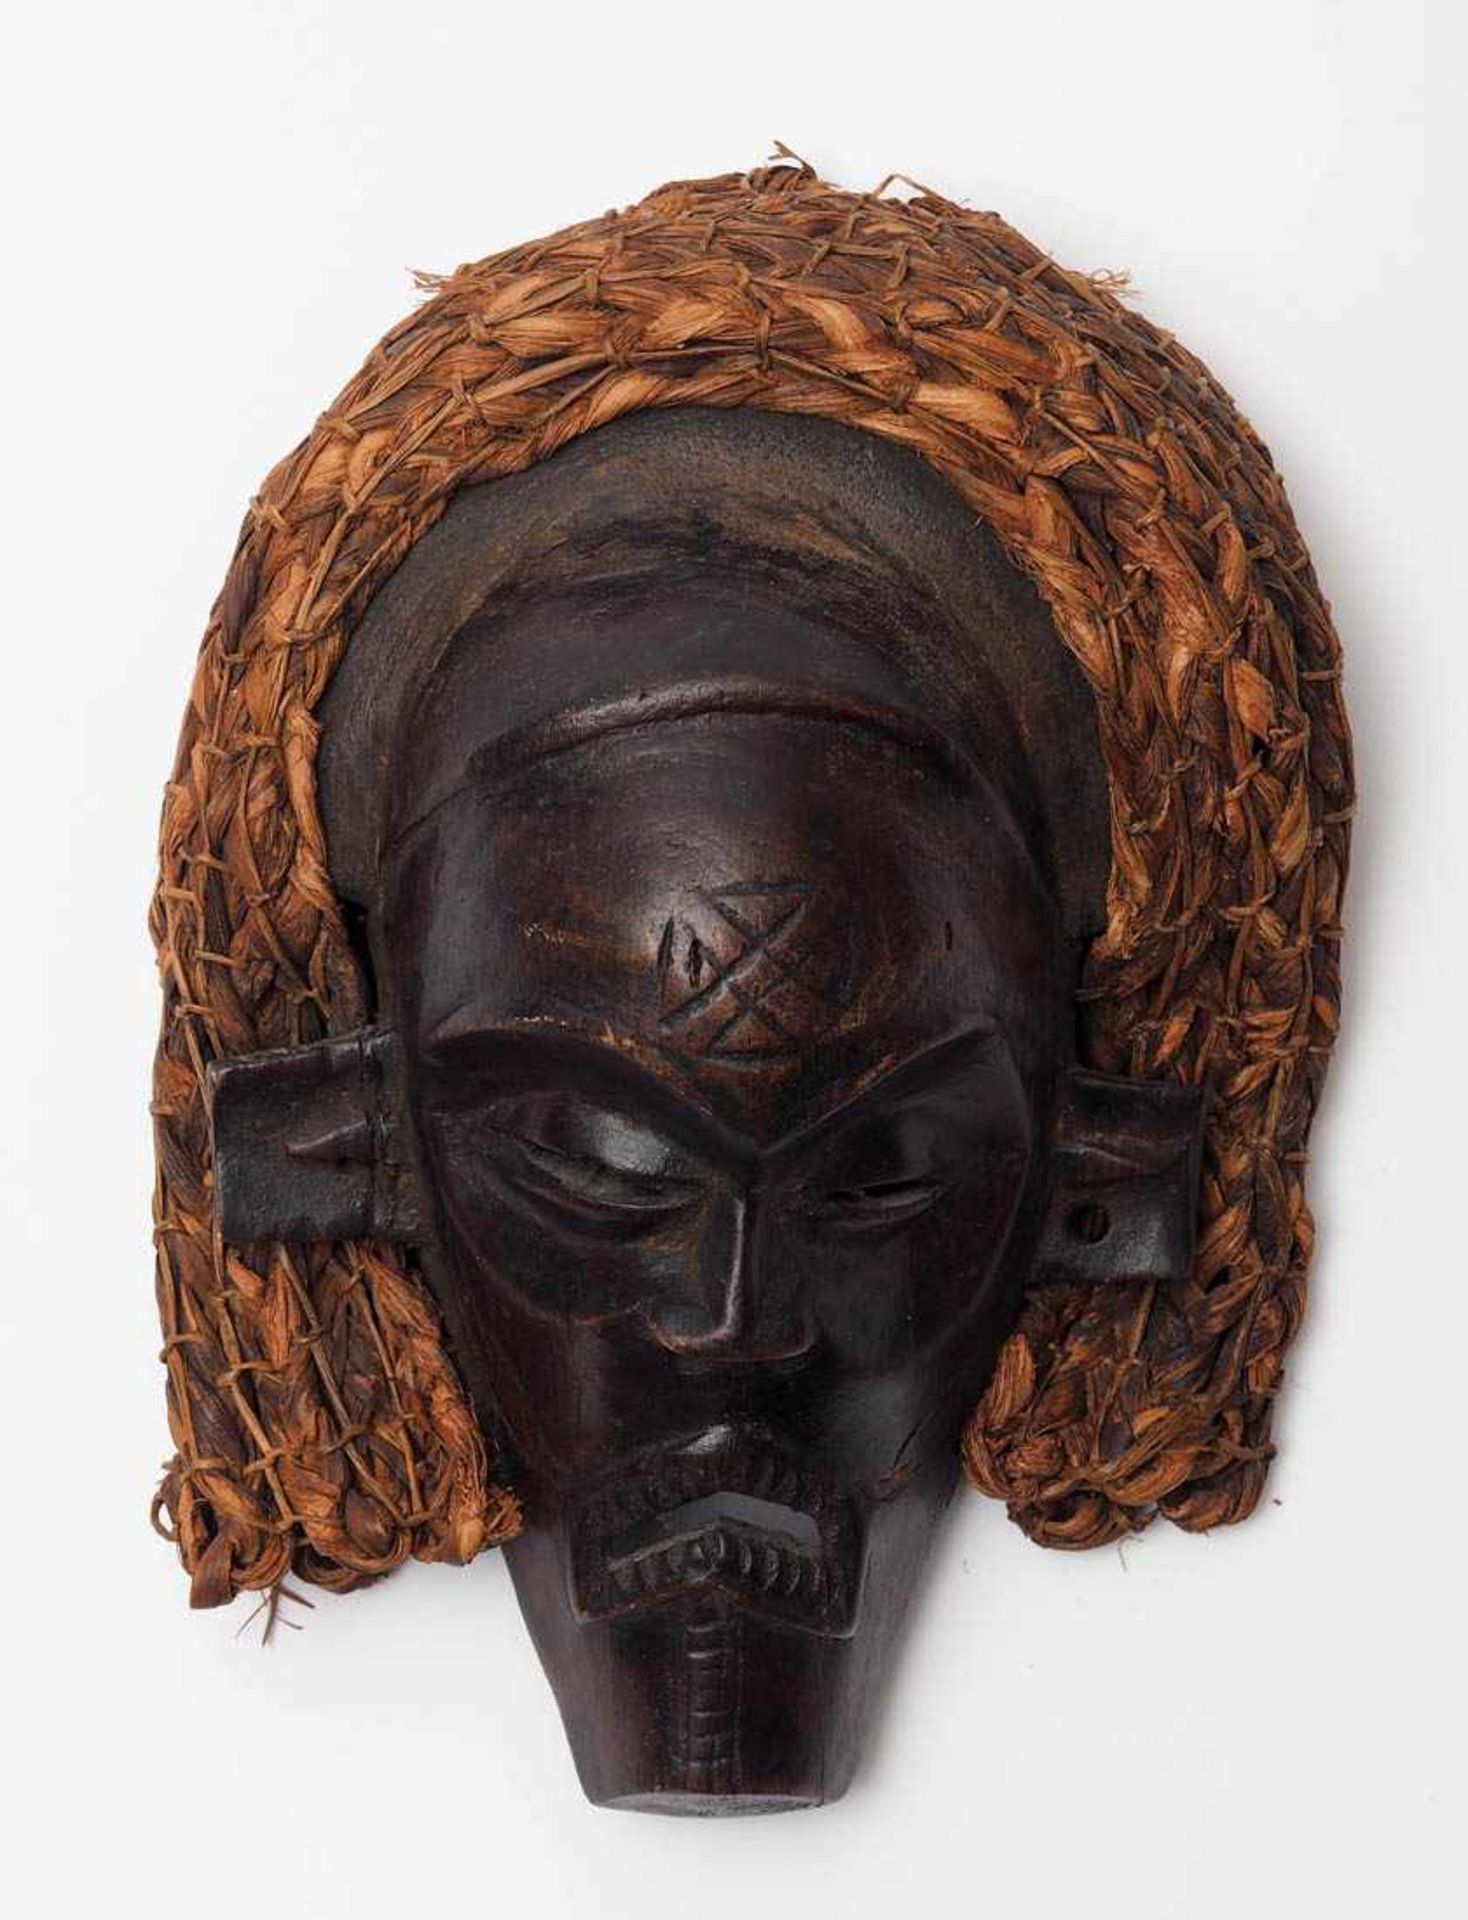 Mädchen-Maske "Pwo", Chokwe, Angola Stilisiertes Gesicht mit Haarkranz aus geflochtenem Bast.